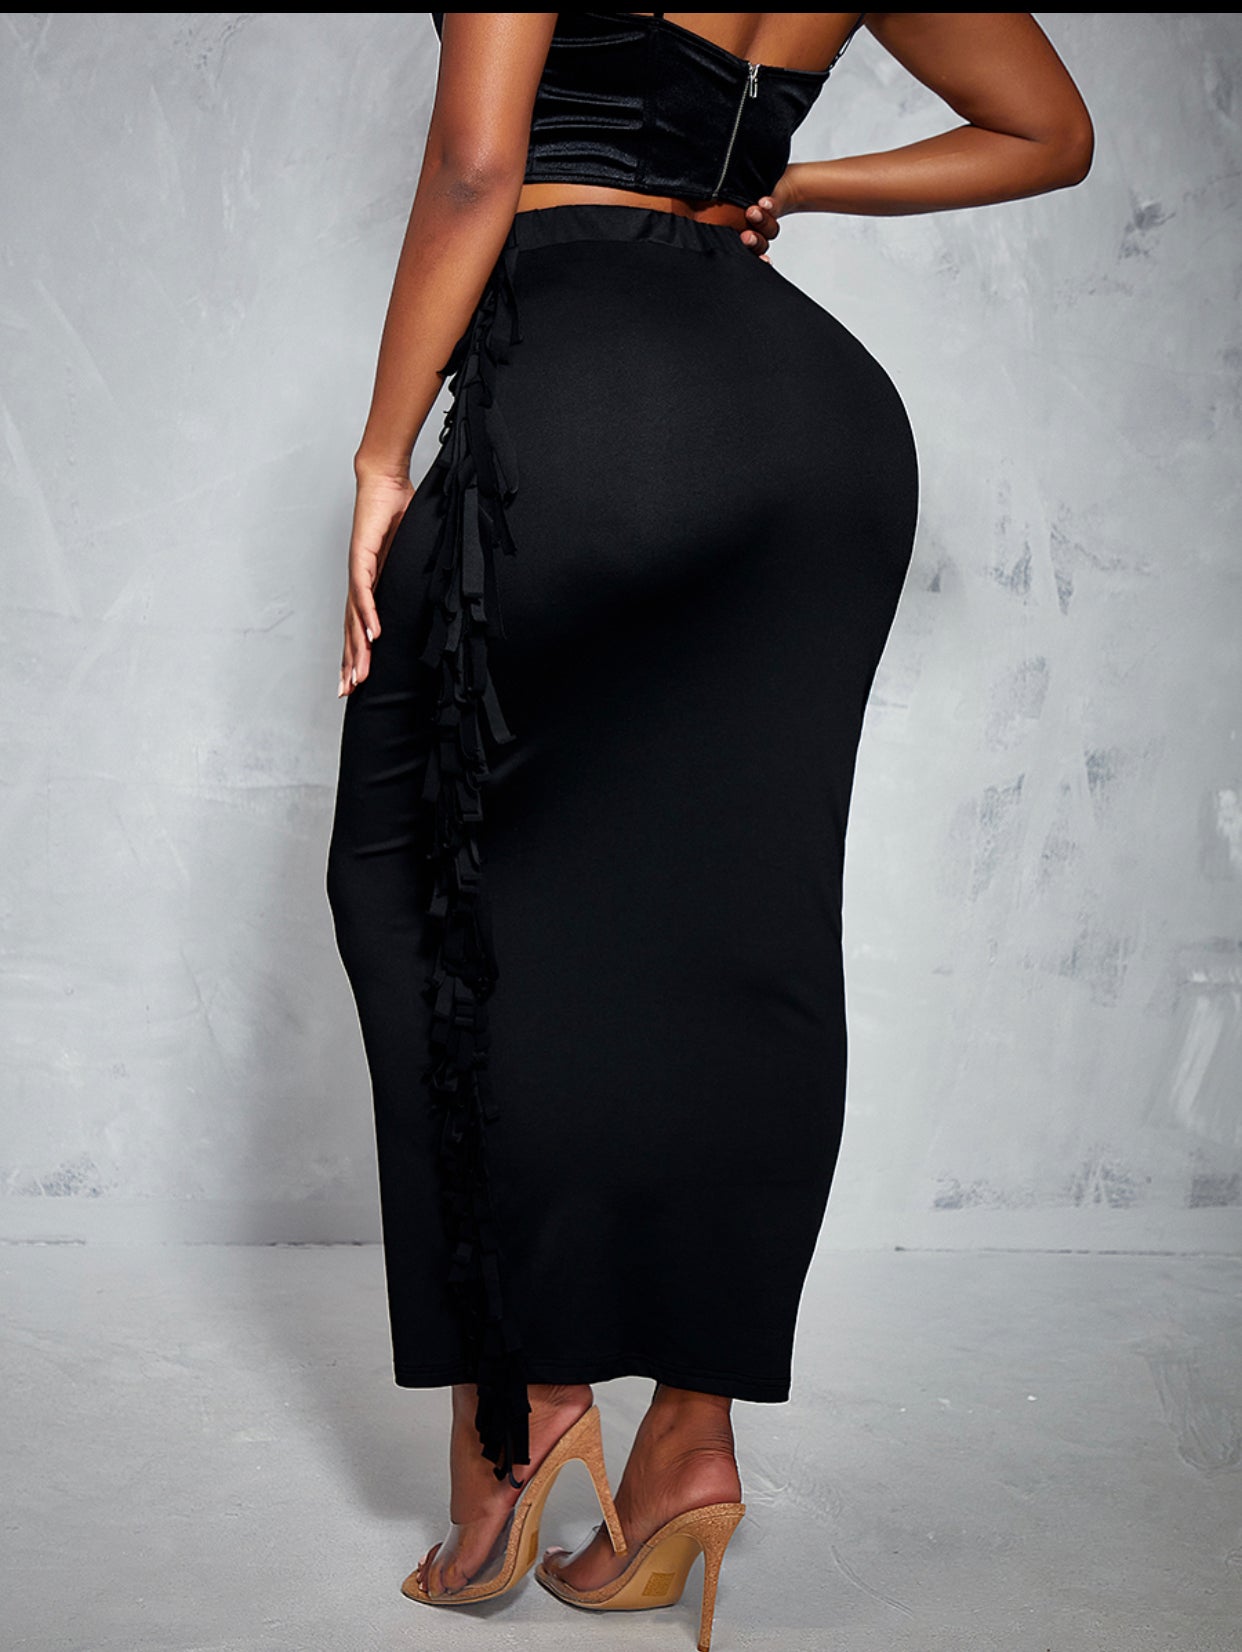 Black Tassels Skirt